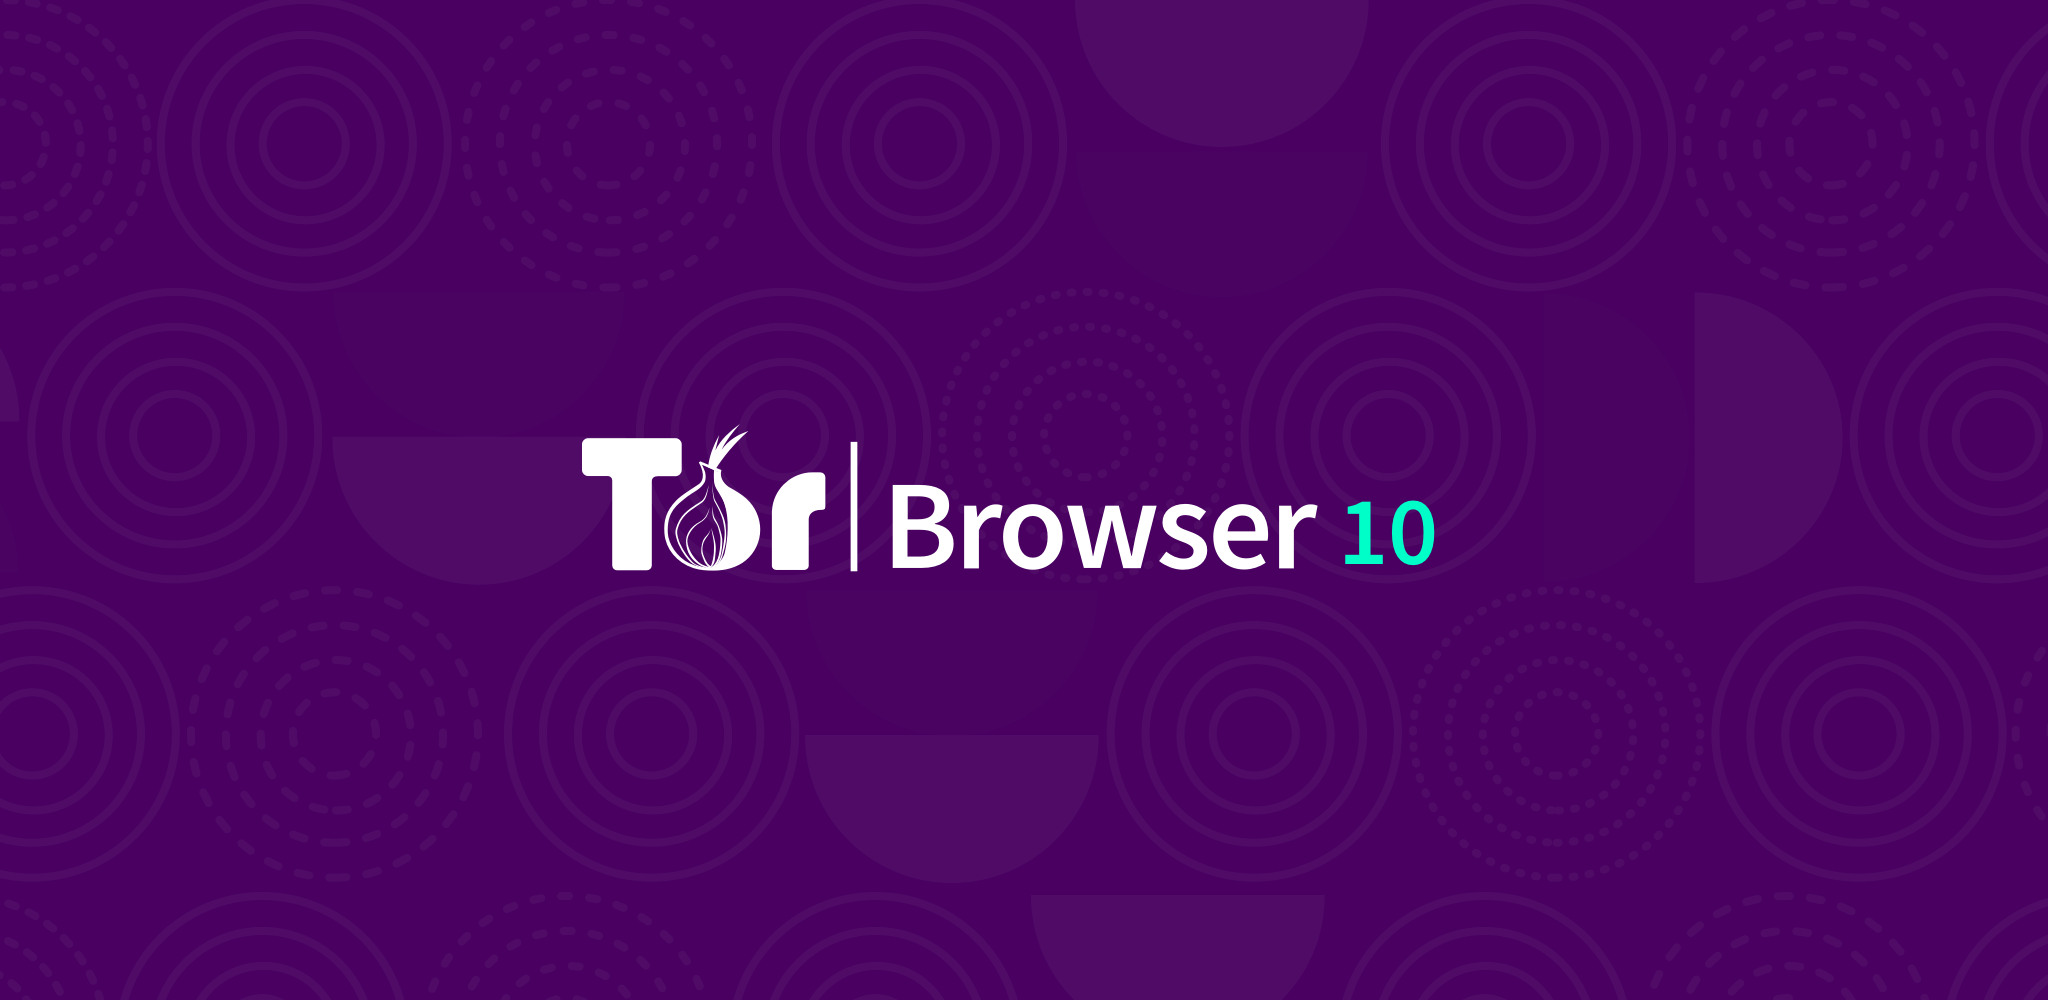 Download free tor browser for windows mega даркнет который мы заслужили telegram mega